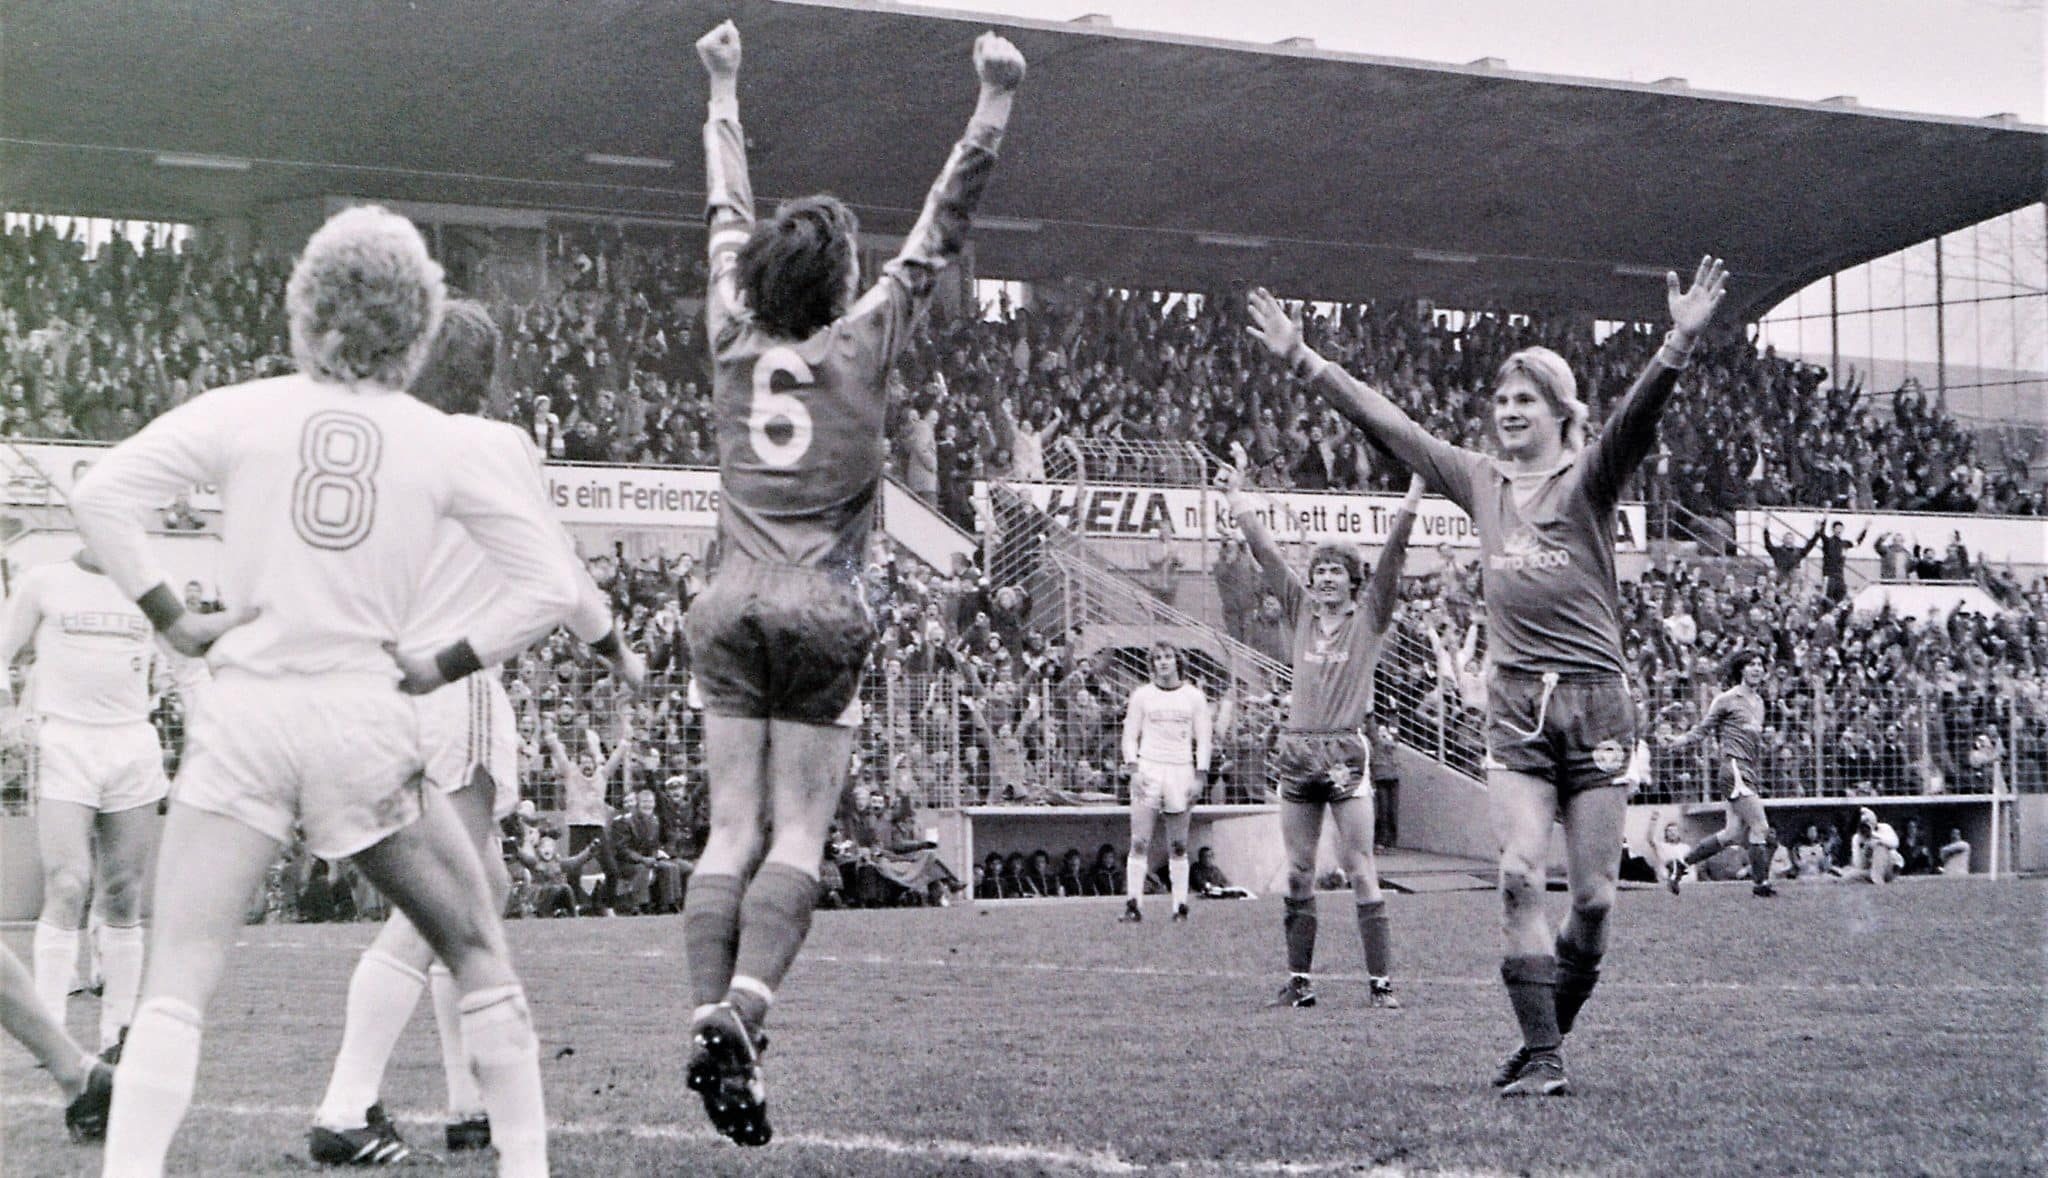 19781202 Dieter Wendland Holger Haltenhof und Harry Witt (von links) feierten 1978 den Sieg gegen den KSC